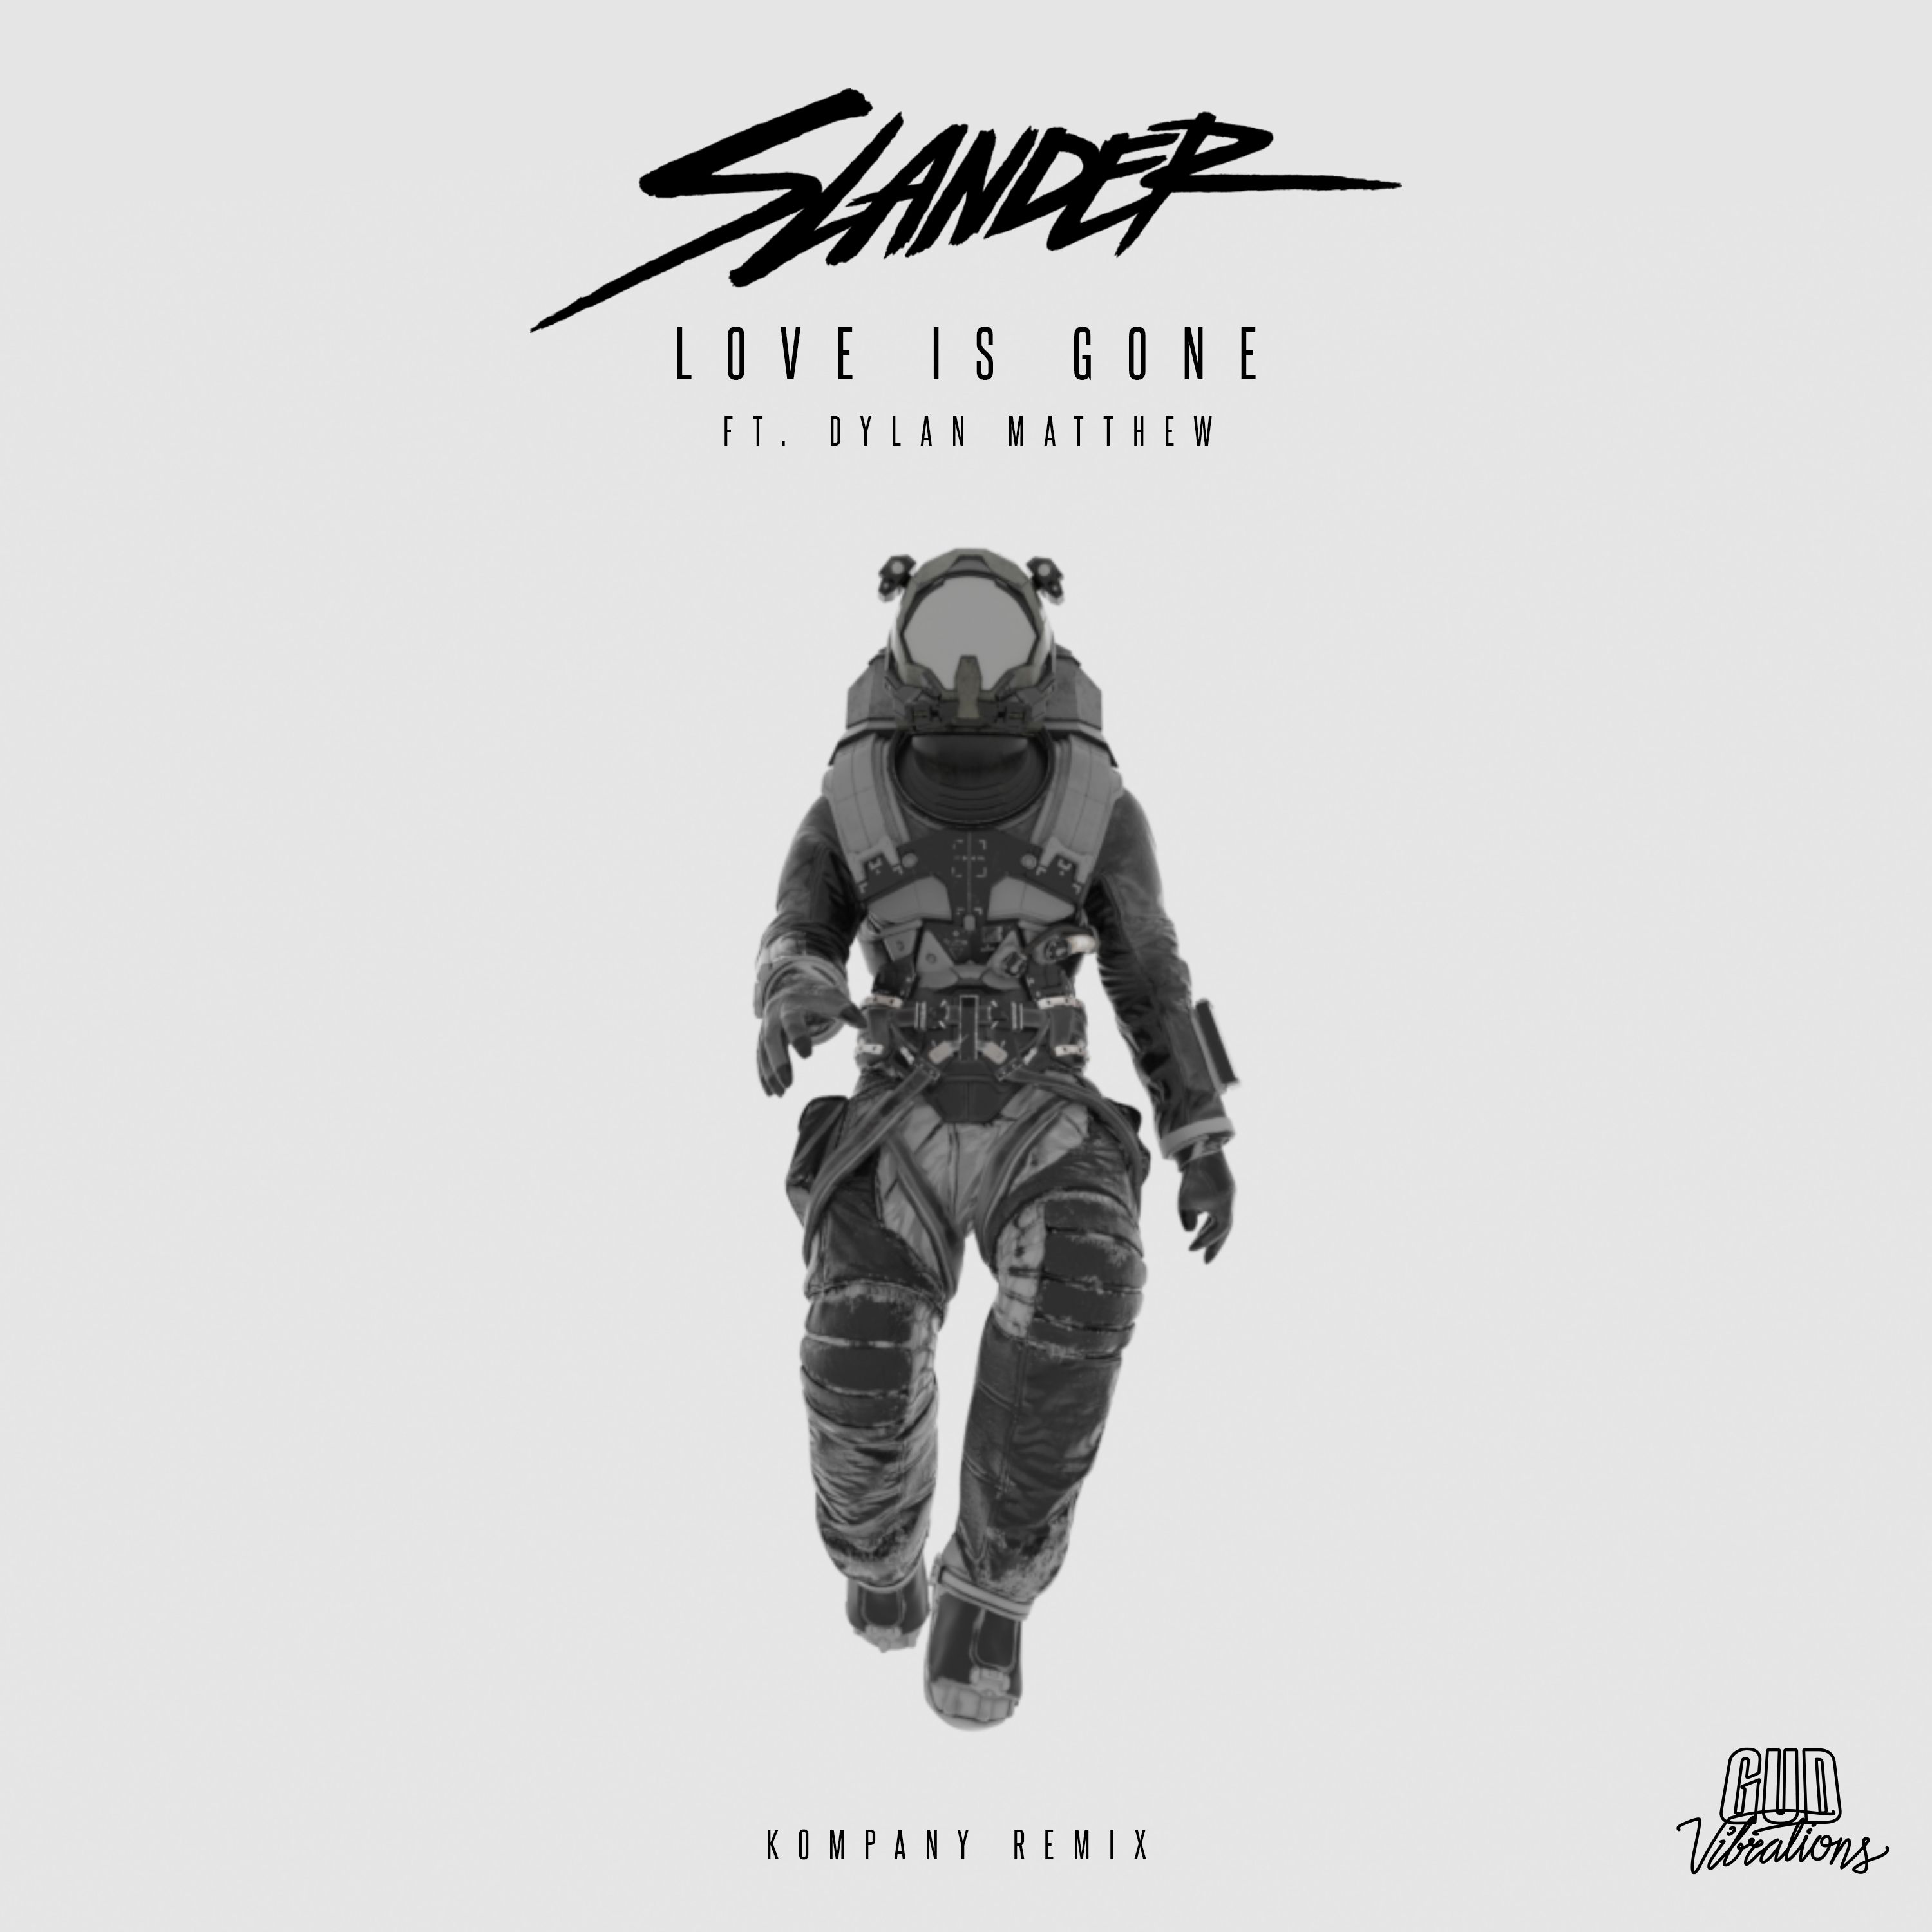 ¡Descargar SLANDER - Love Is Gone (feat. Dylan Matthew) [Kompany Remix]